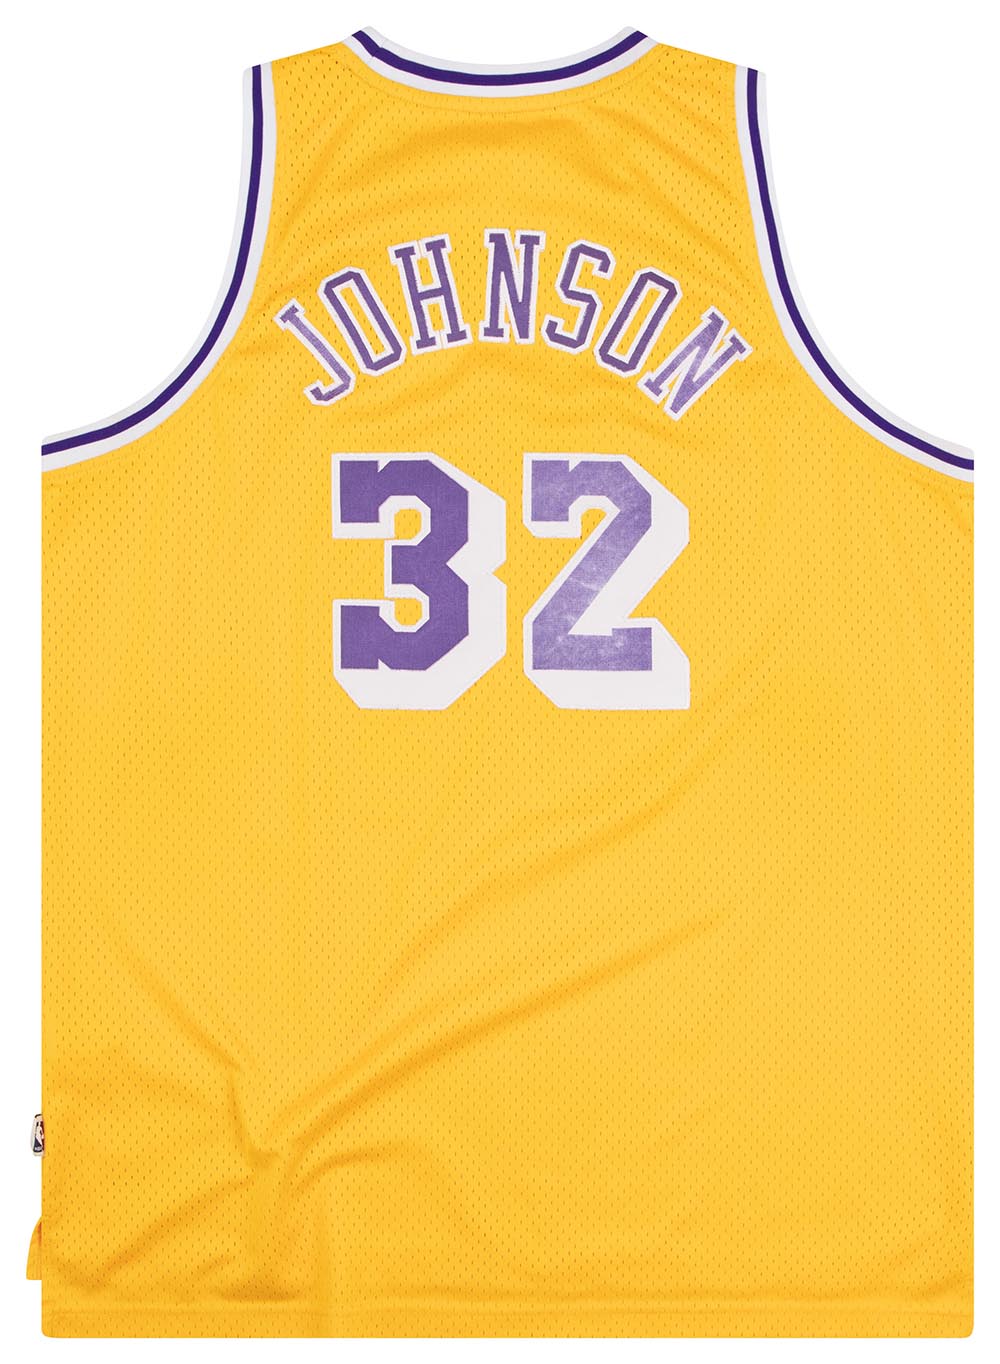 RÉTRO EARVIN JOHNSON #32 Los Angeles Lakers Maillot de Basket